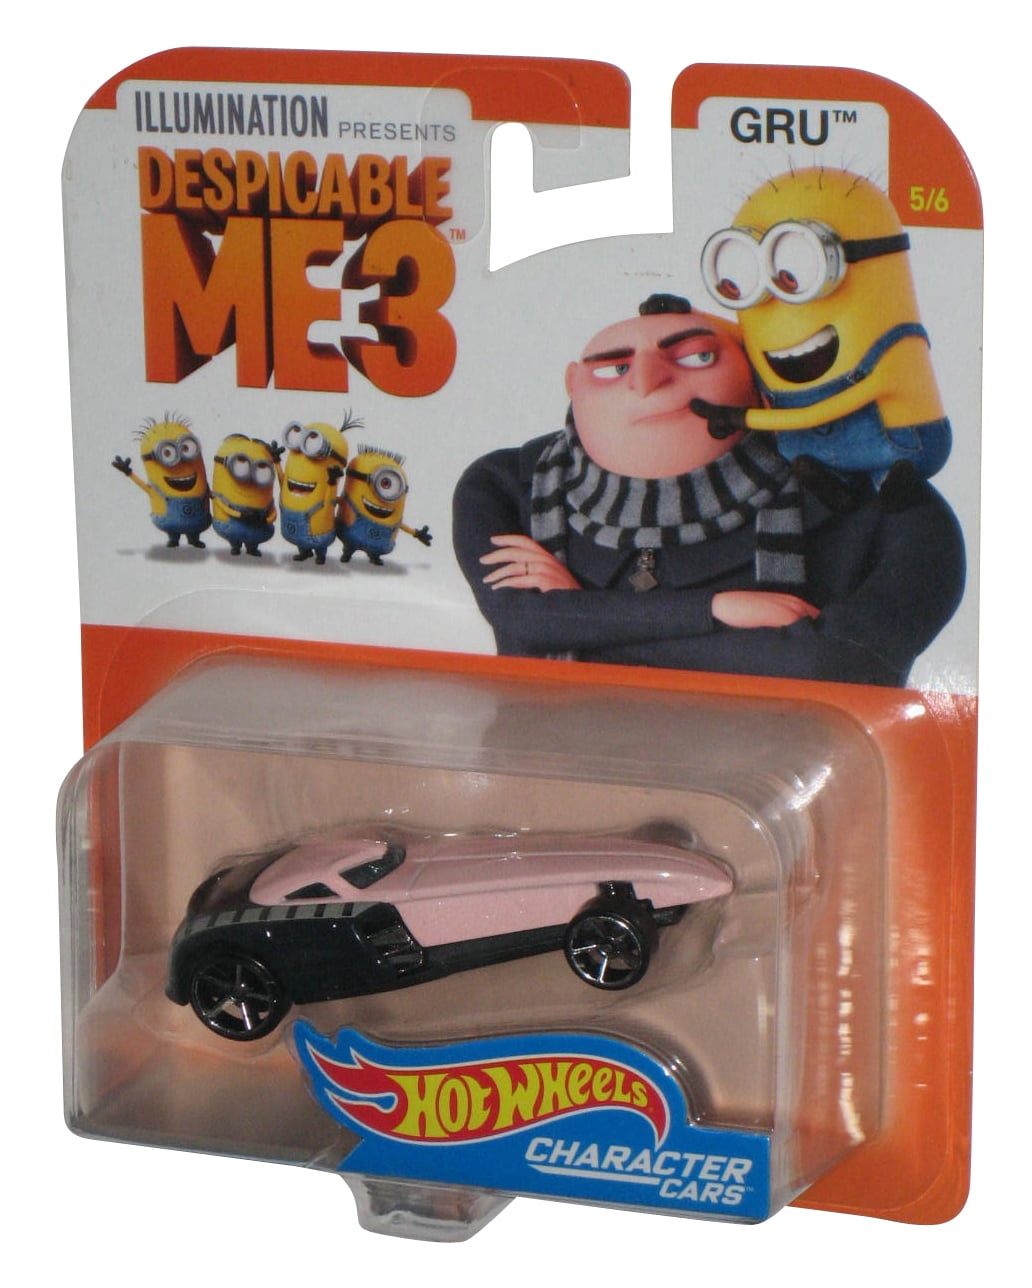 Despicable Me 3 Hot Wheels 16 Gru Series 3 Toy Car Vehicle 5 6 Walmart Com Walmart Com